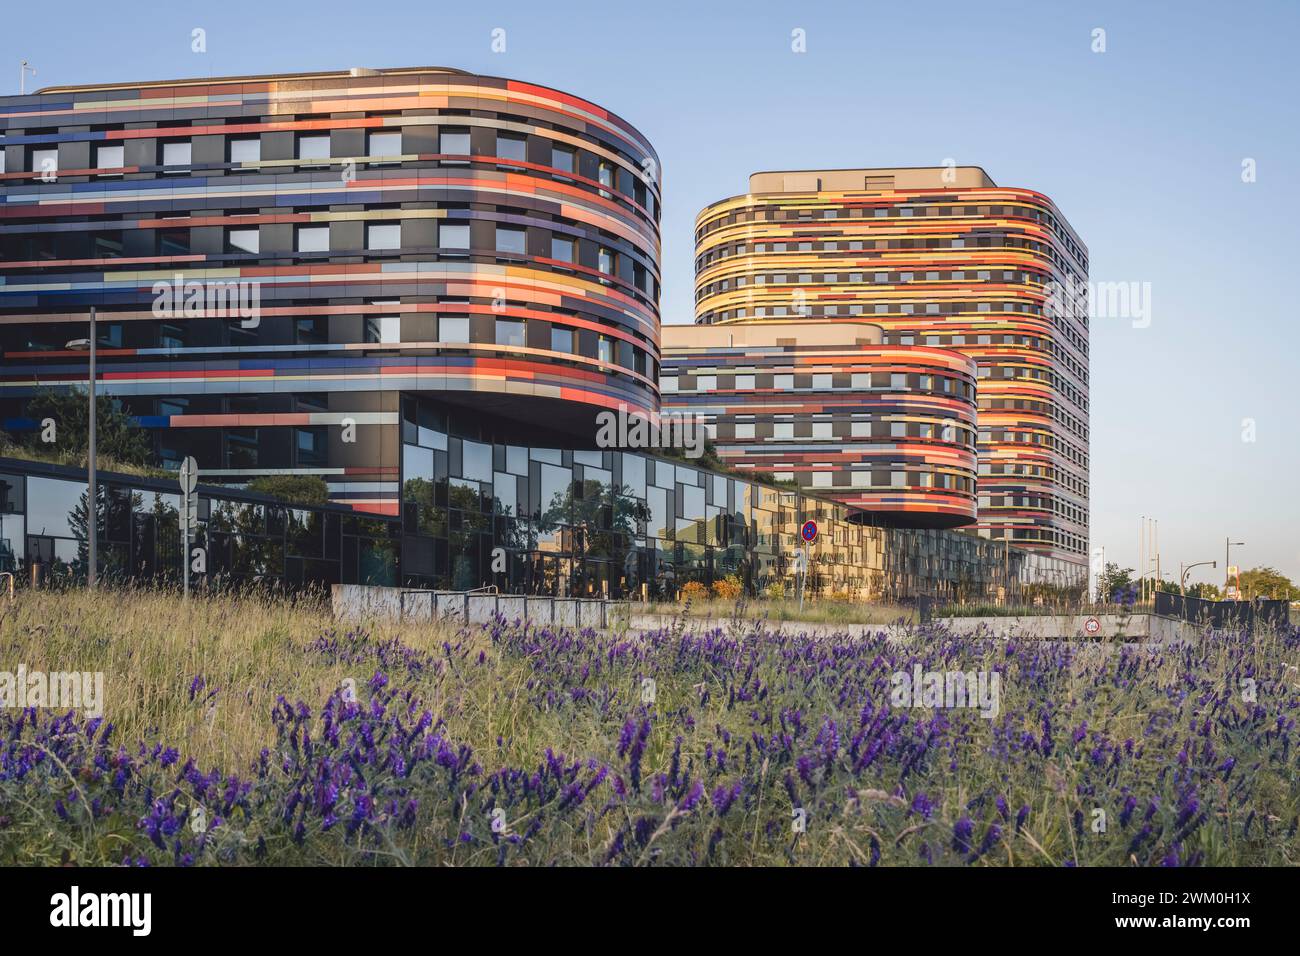 Allemagne, Hambourg, immeuble de bureaux AMT fur Umwelt au printemps Banque D'Images